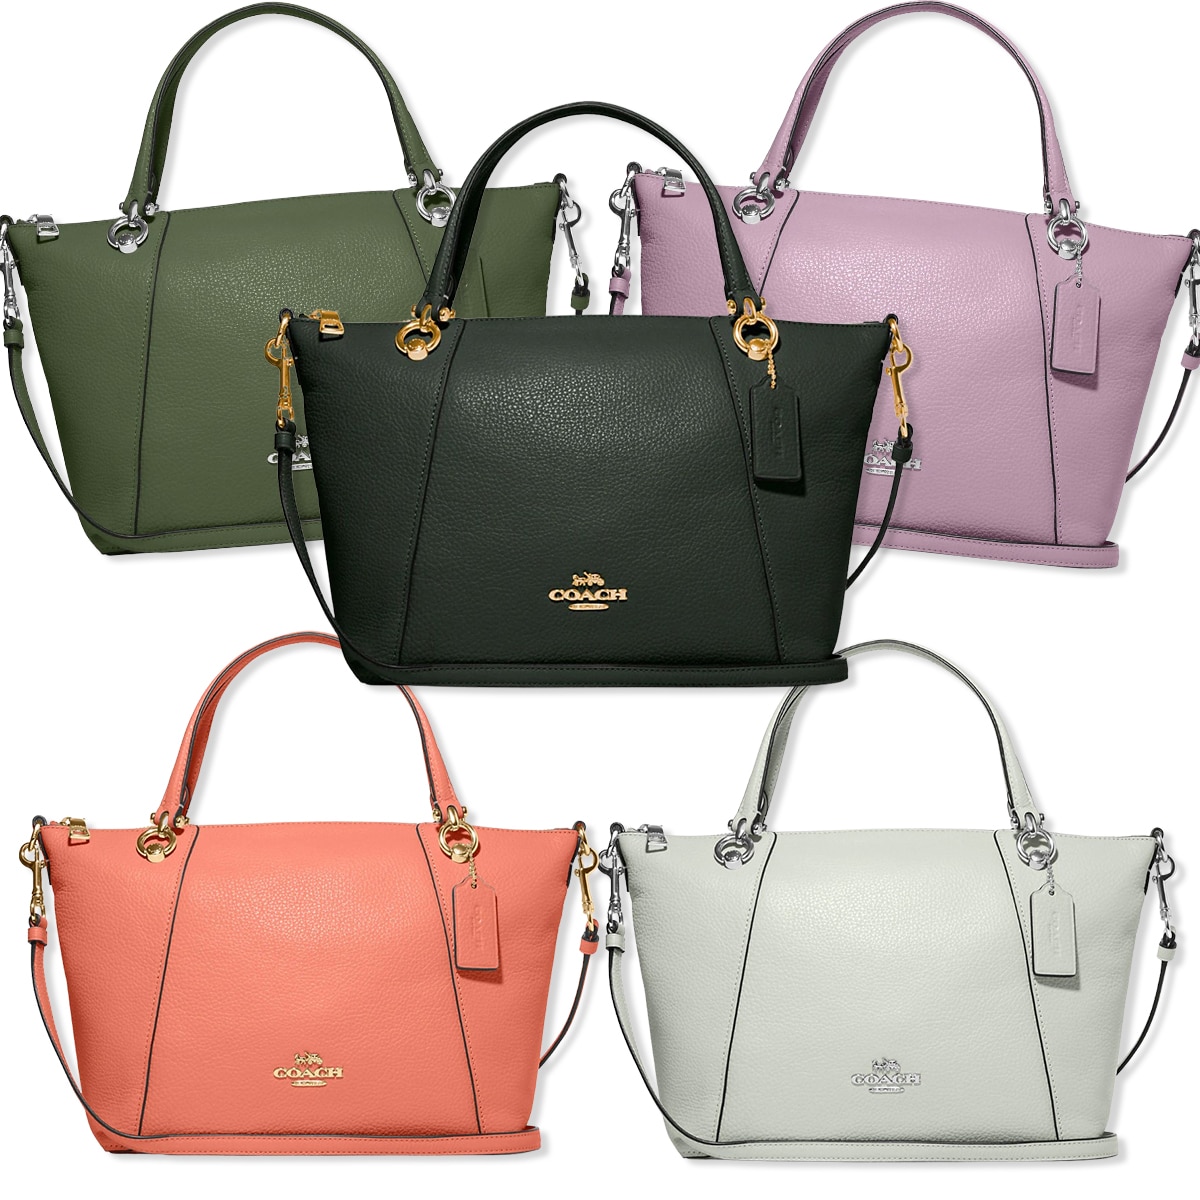 Shop Handbags on Sale - Stylo Bags